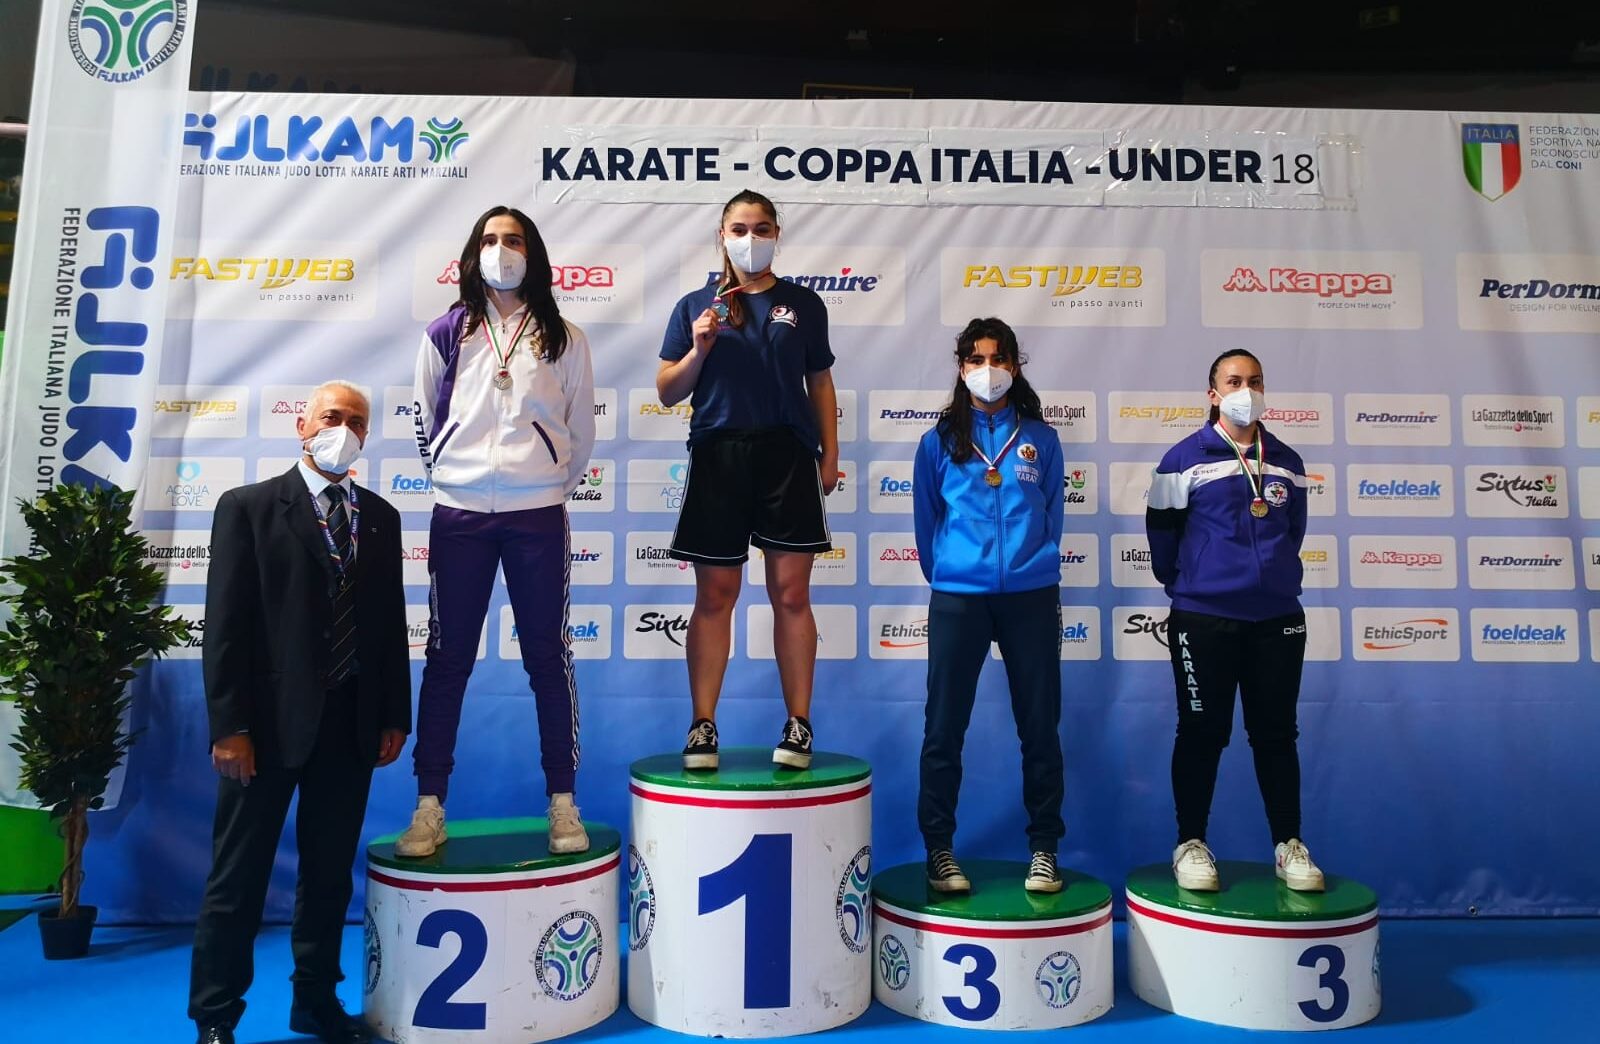 La casentinese Elisa Liguri si conferma medaglia d’oro nella Coppa Italia di Karate